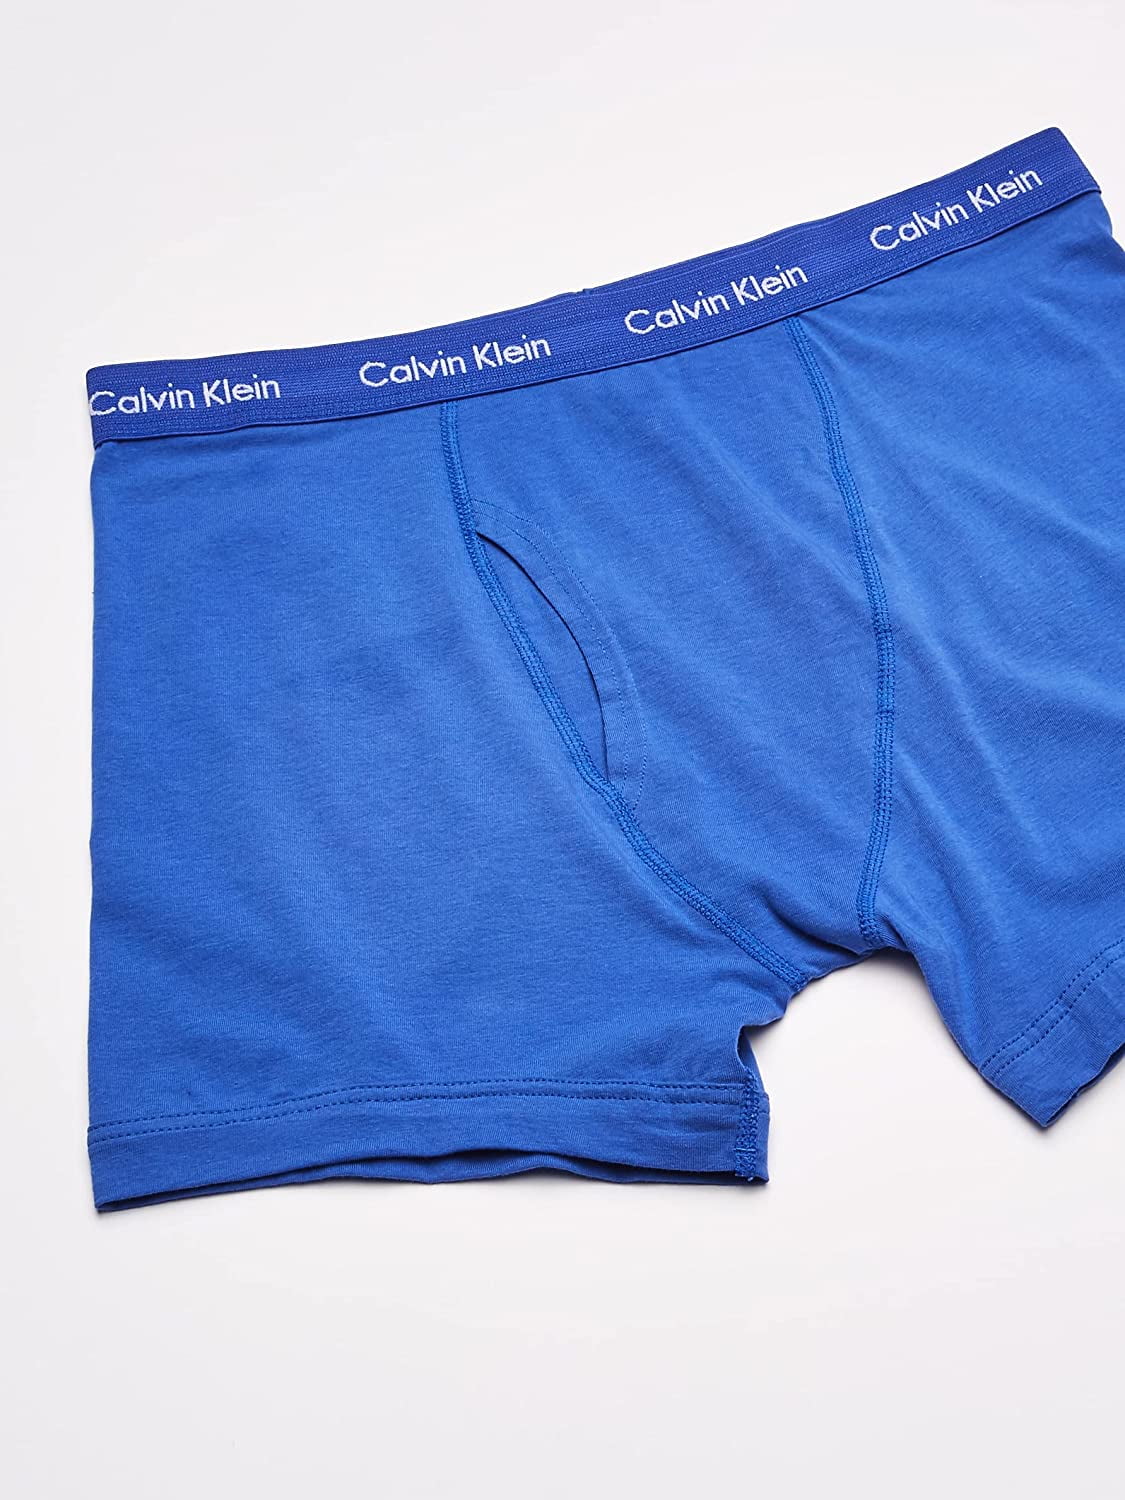 cleaner livestock Sentimental Calvin Klein Mens 5 Pack Underwear Boxer Briefs Blue S - Walmart.com